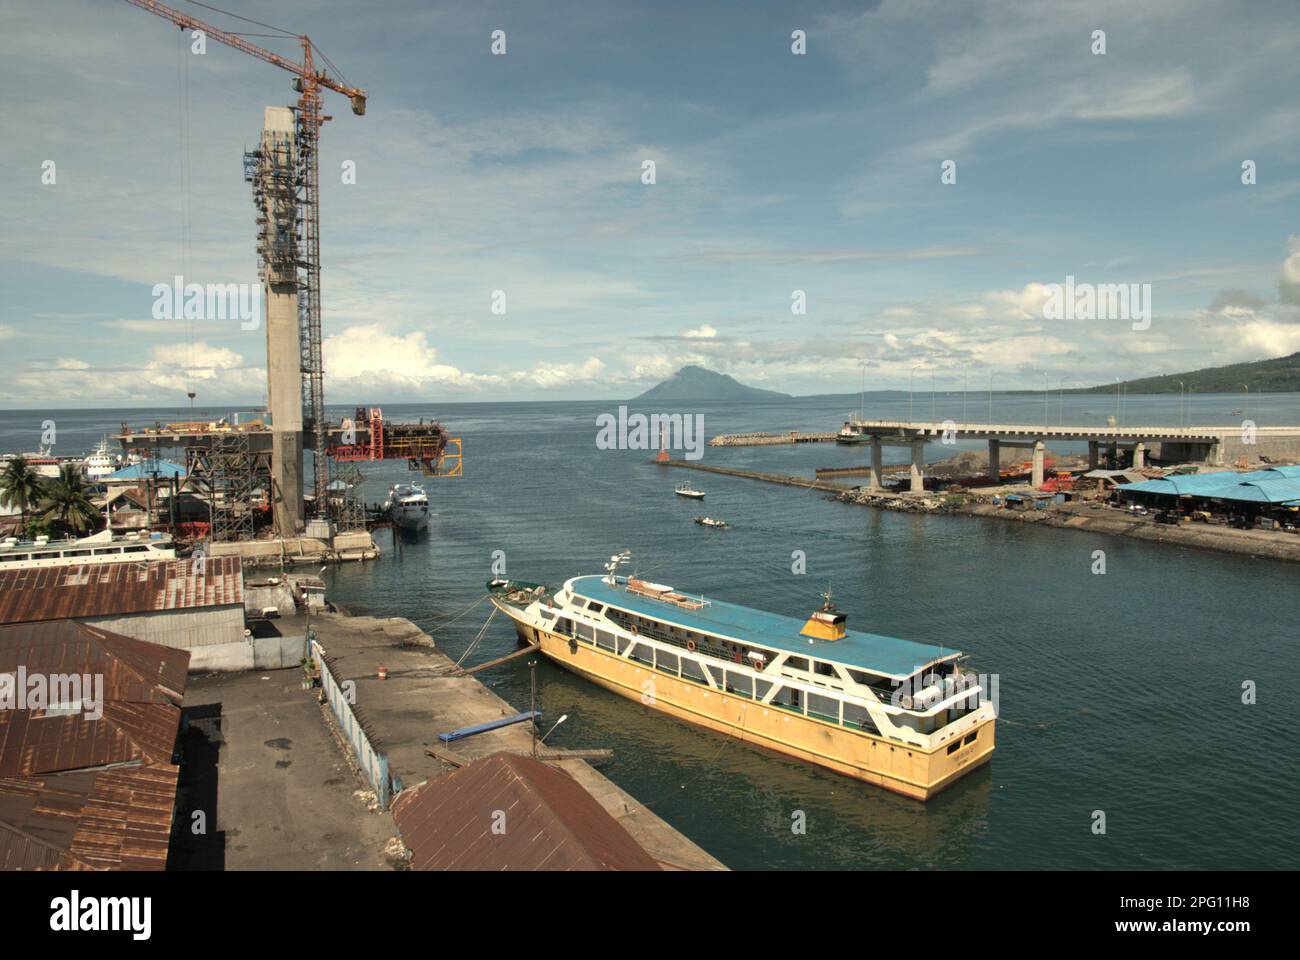 Vue sur la baie de Manado avec le mont Manado Tua en premier plan d'un ferry et d'une partie du pont Soekarno en construction dans la zone côtière de Manado, au nord de Sulawesi, en Indonésie. Banque D'Images